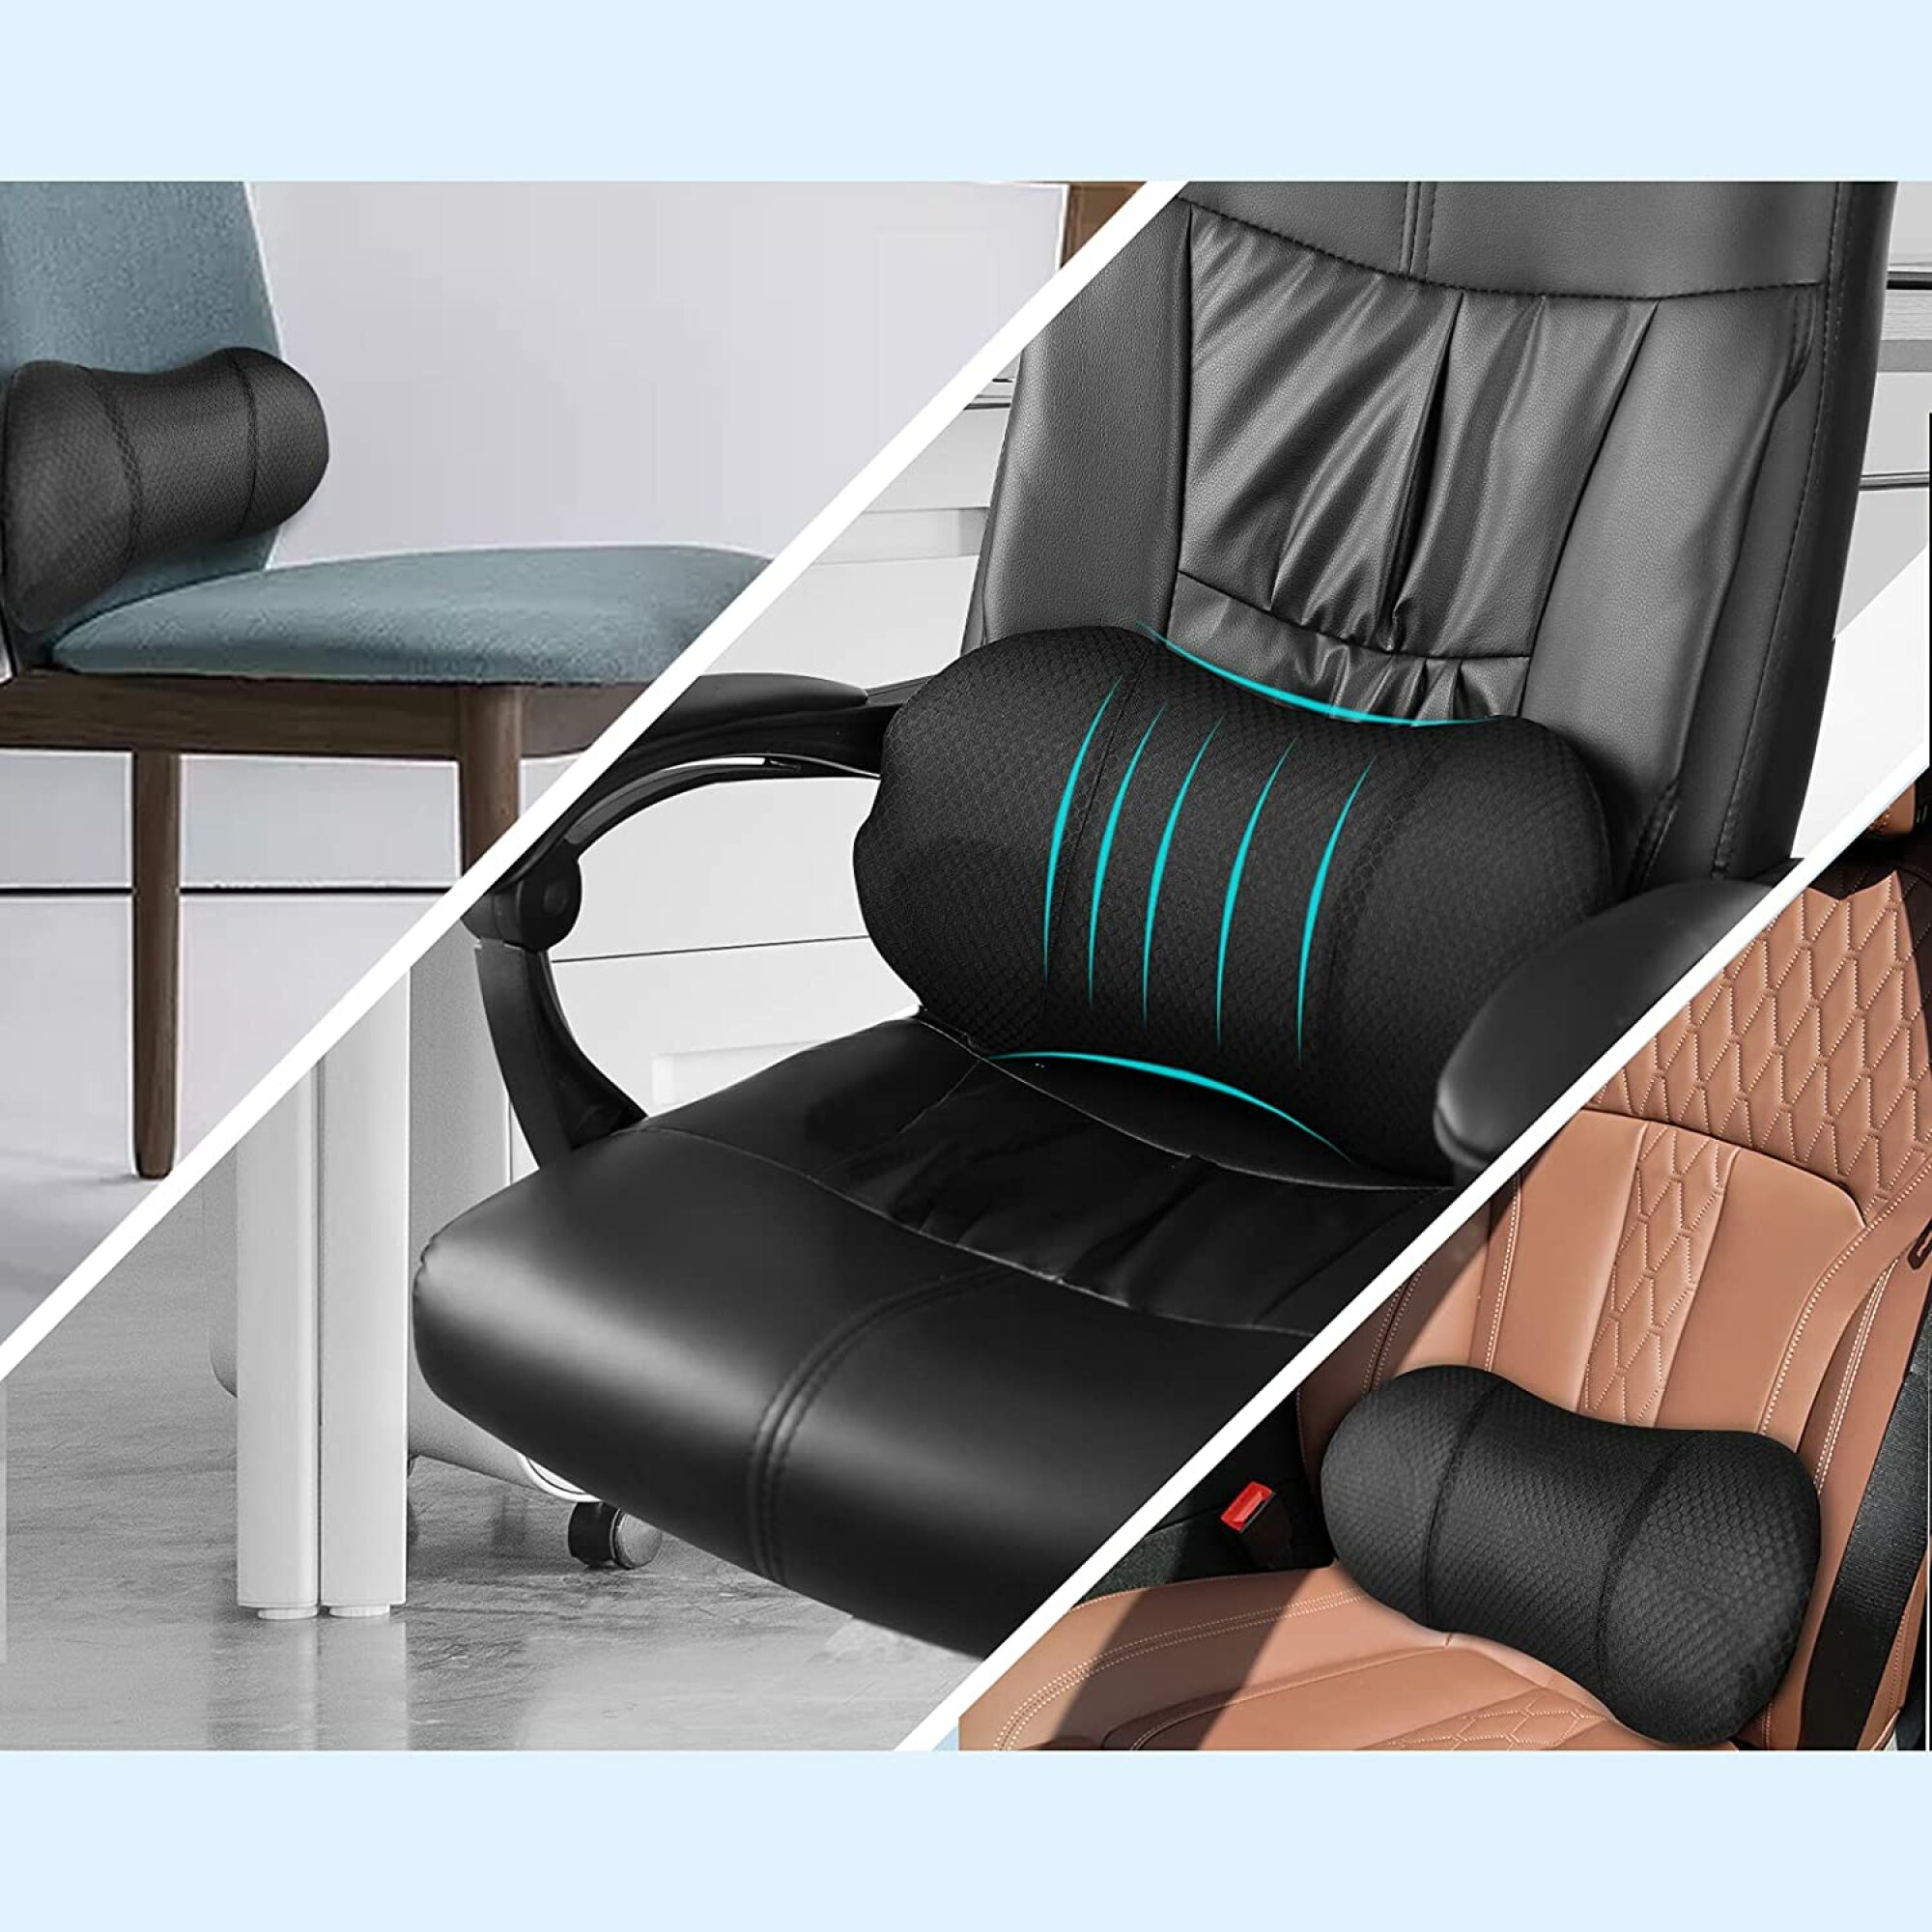 oreiller lombaire gonflable utilisé avec une chaise en bois sans accoudoirs, une chaise de bureau et un siège d'auto